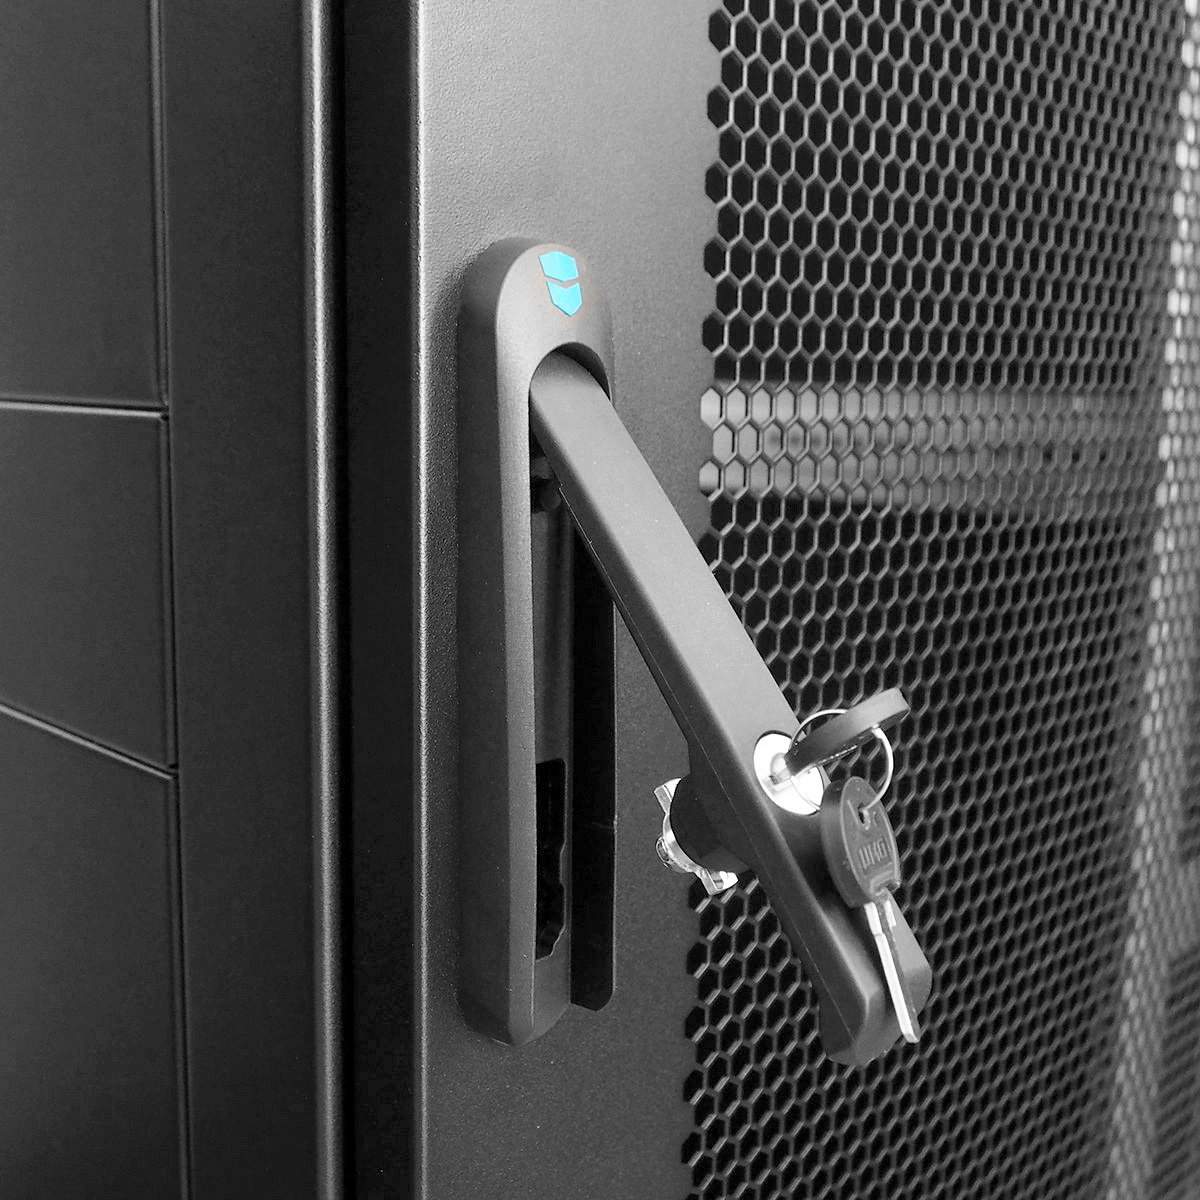 Шкаф серверный напольный 42U (600 × 1000) дверь перфорированная 2 шт., цвет черный